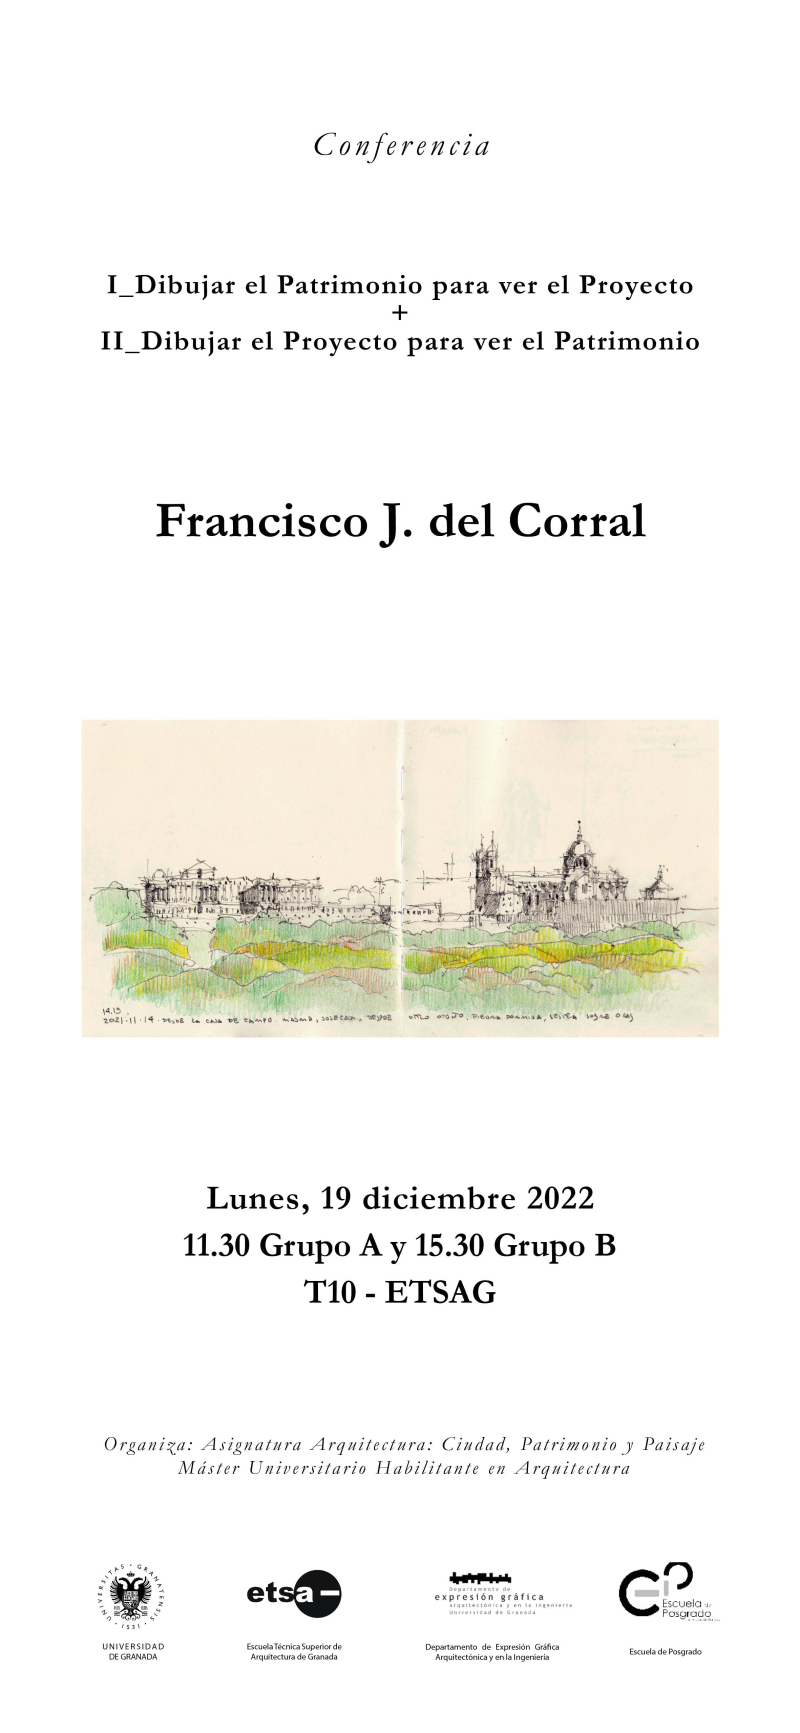 Cartel de la conferencia de Francisco J. del Corral